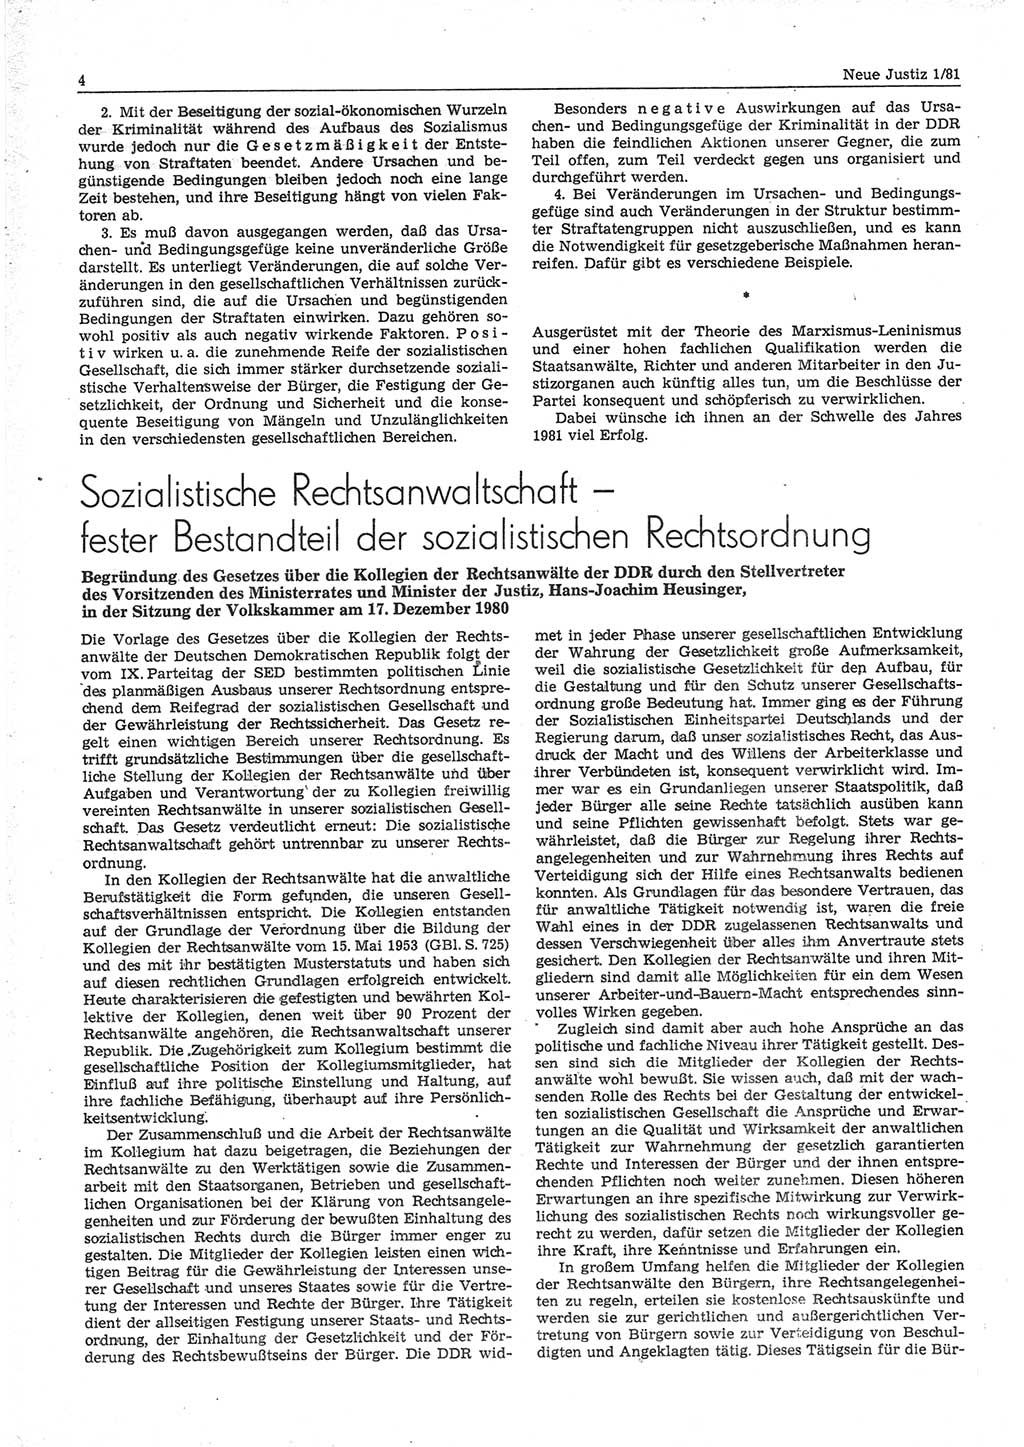 Neue Justiz (NJ), Zeitschrift für sozialistisches Recht und Gesetzlichkeit [Deutsche Demokratische Republik (DDR)], 35. Jahrgang 1981, Seite 4 (NJ DDR 1981, S. 4)